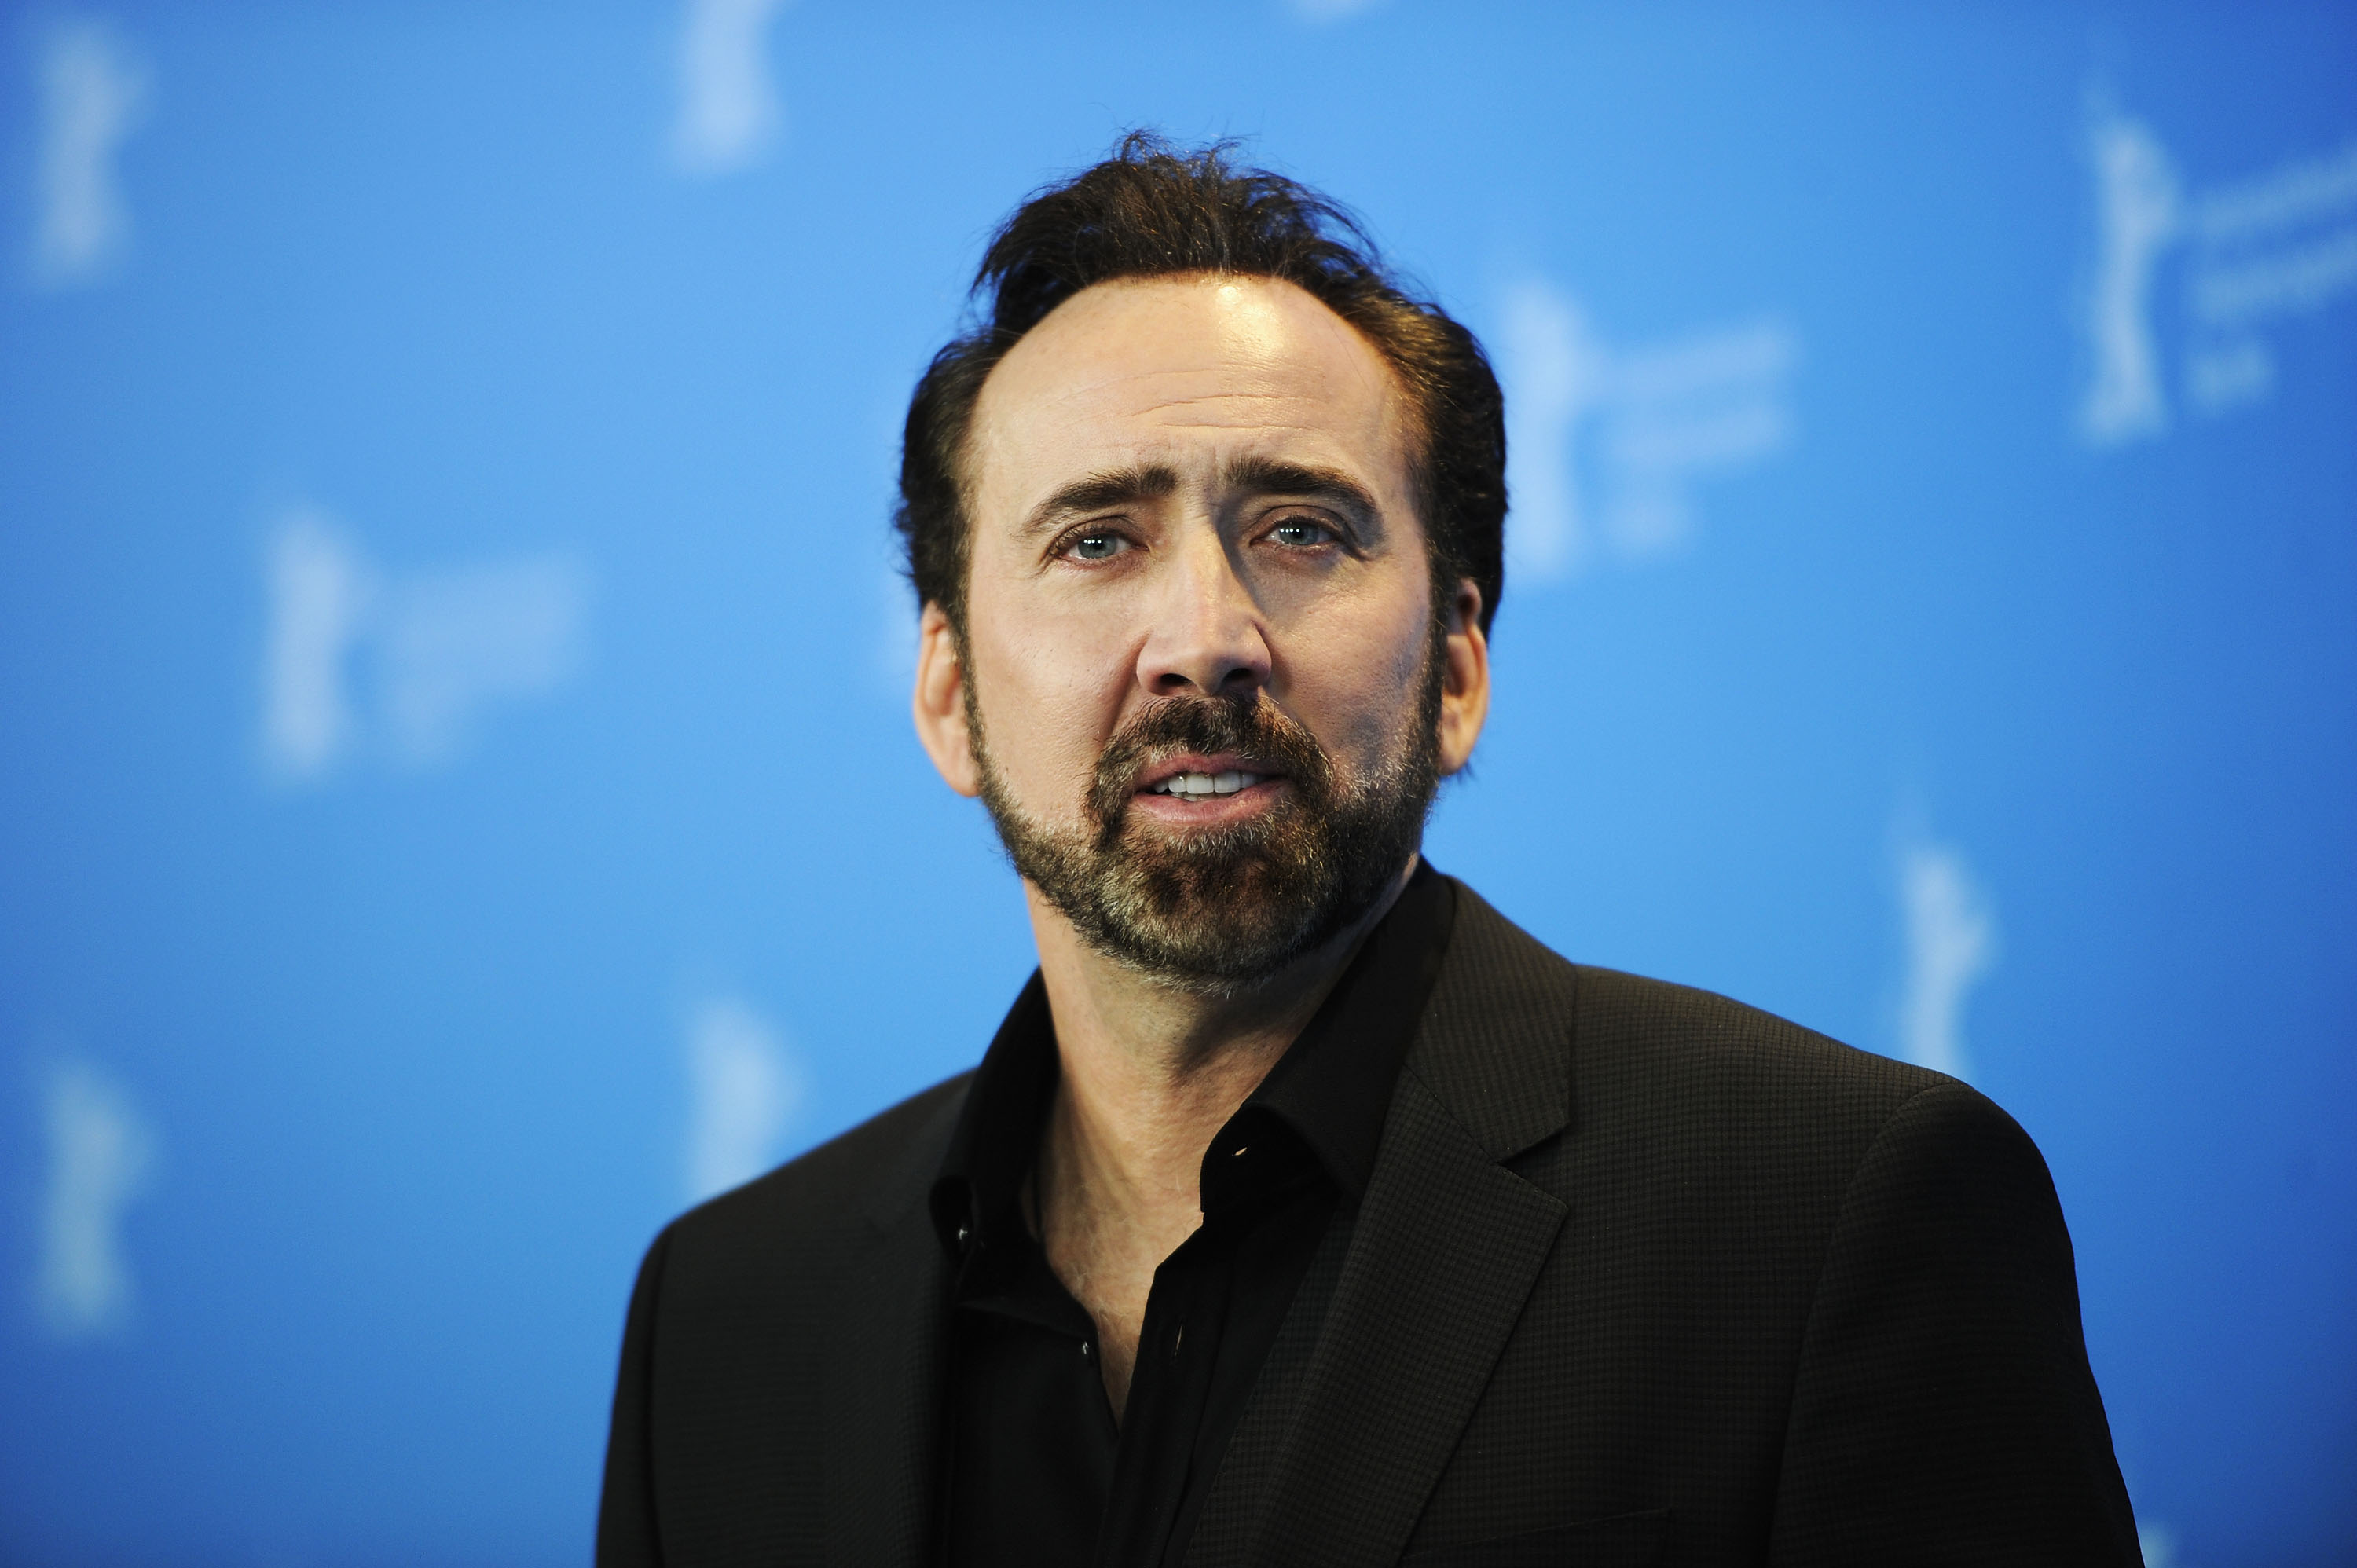 Nicolas Cage au photocall de "The Croods" lors de la 63e édition du Festival international du film de Berlin, le 15 février 2013, à Berlin, Allemagne | Source : Getty Images